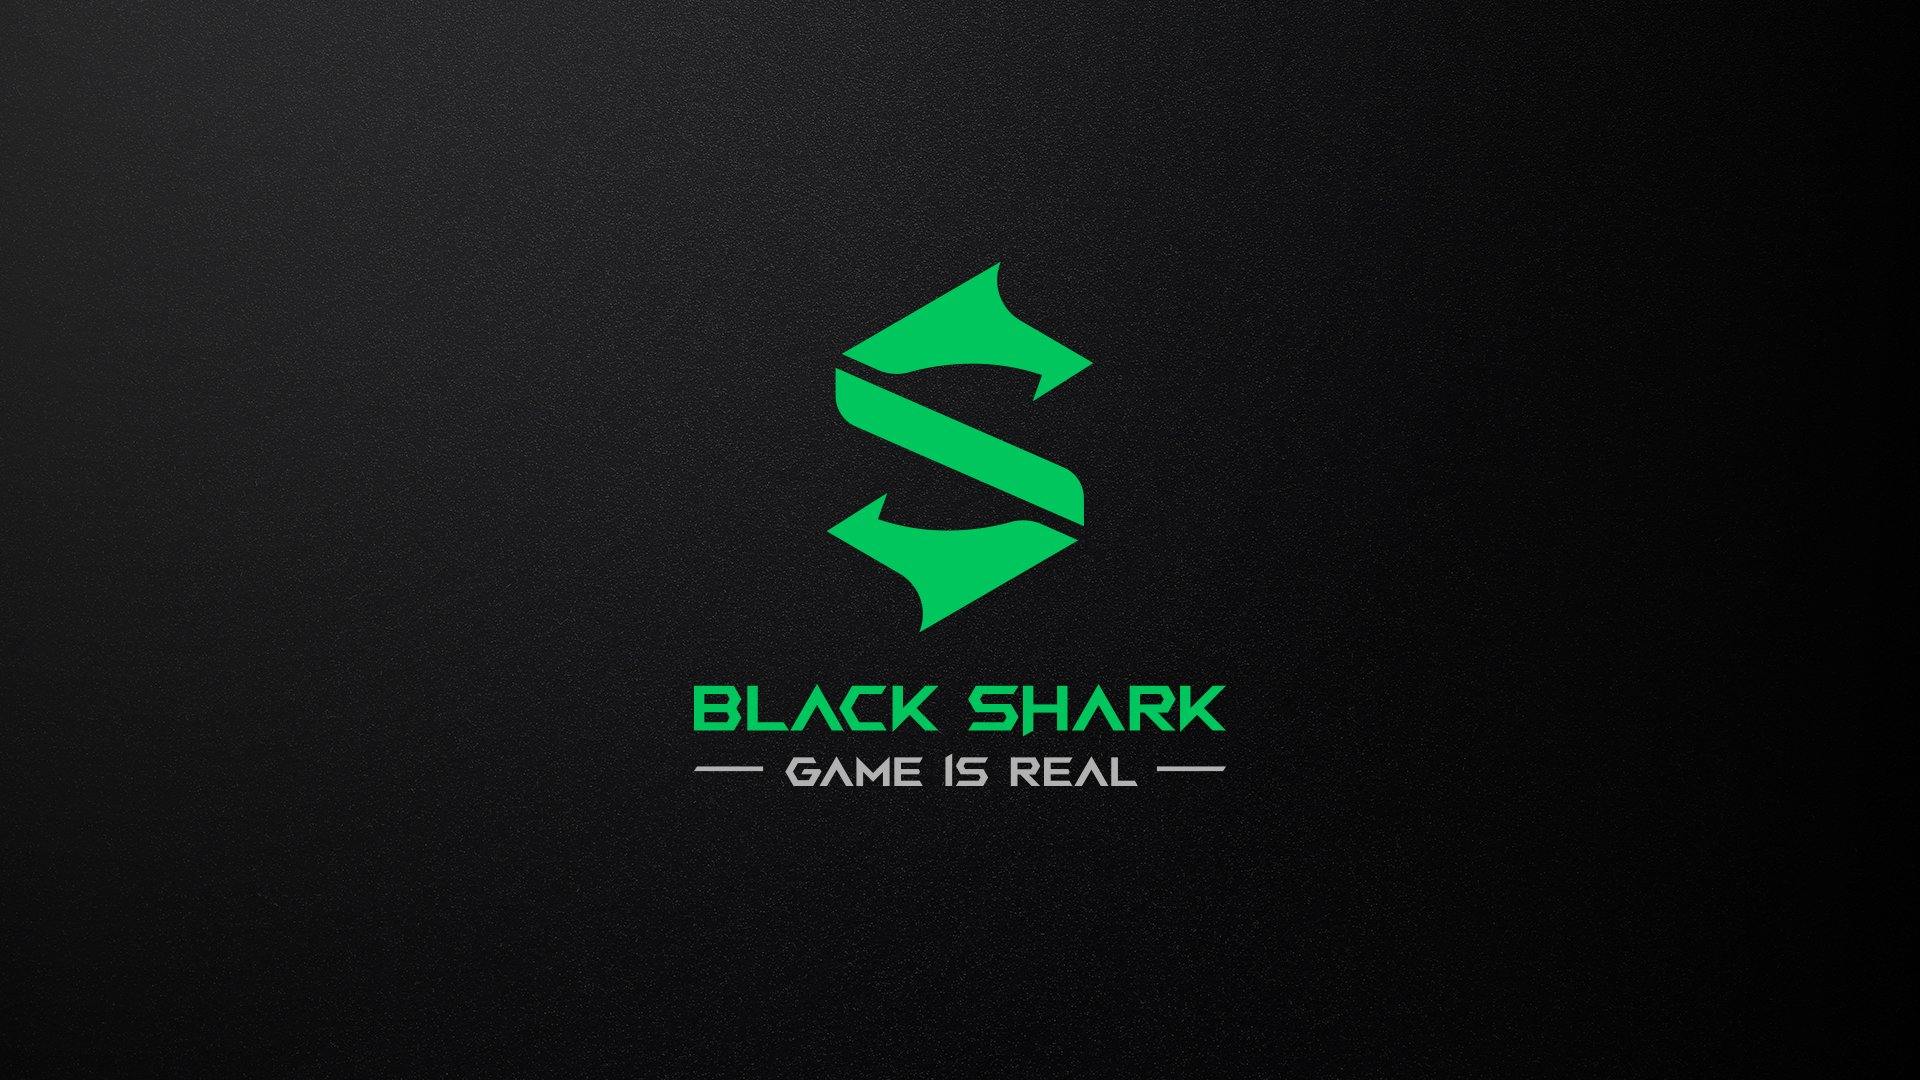 Black Shark 4 xuất hiện trên AnTuTu Benchmark với số điểm cao kỷ lục đánh  bại mọi đối thủ  Sforum